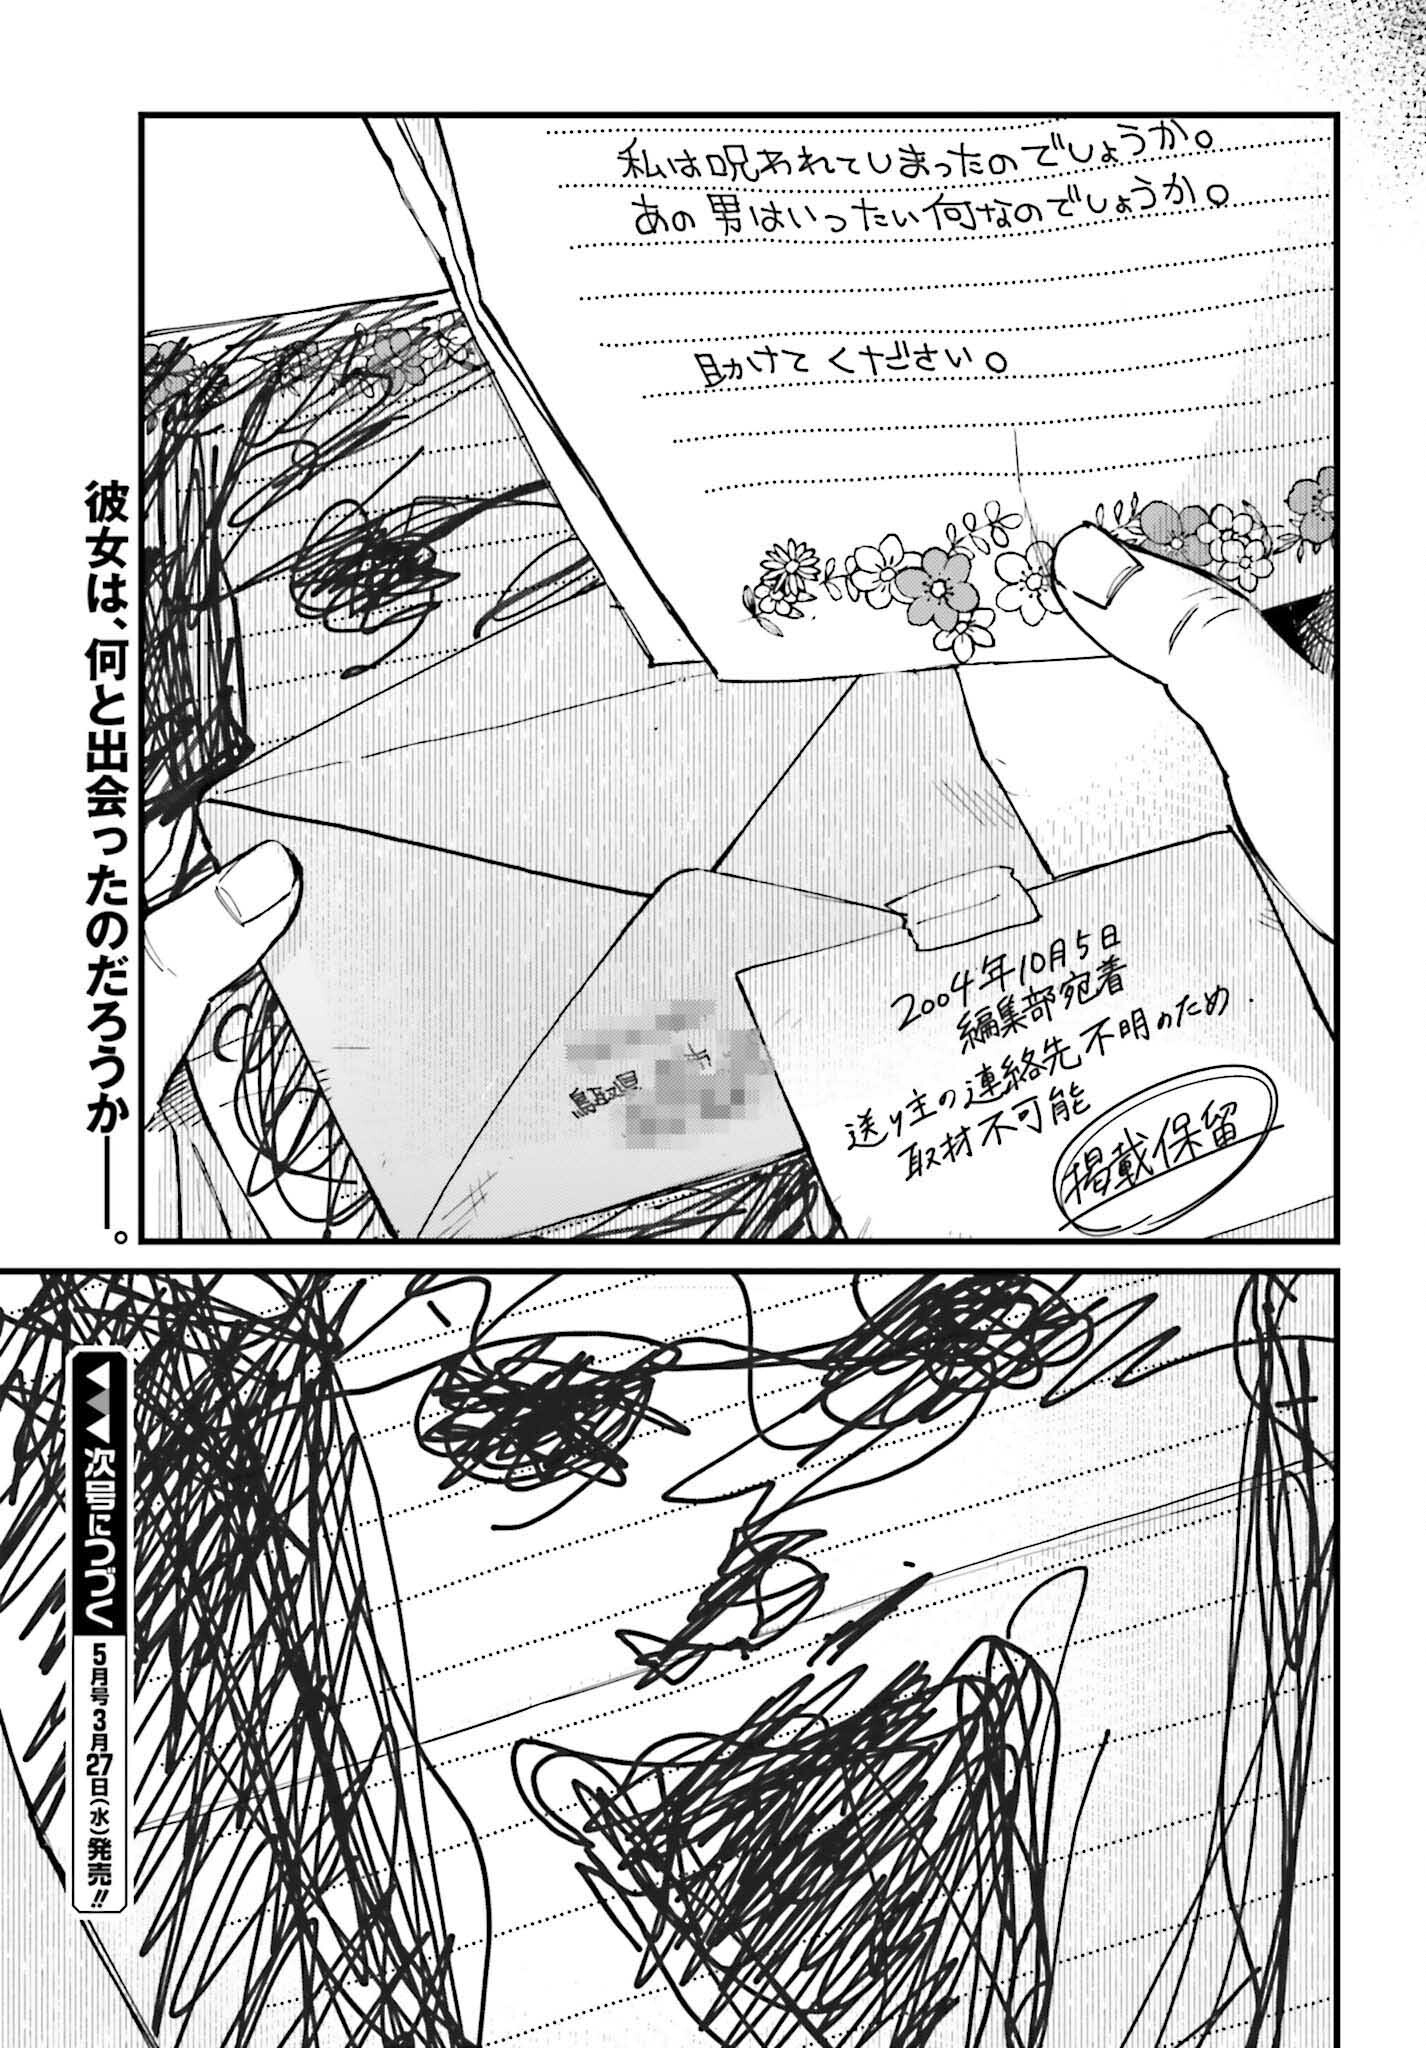 Kinki Chihou no Aru Basho ni Tsuite - Chapter 4 - Page 25